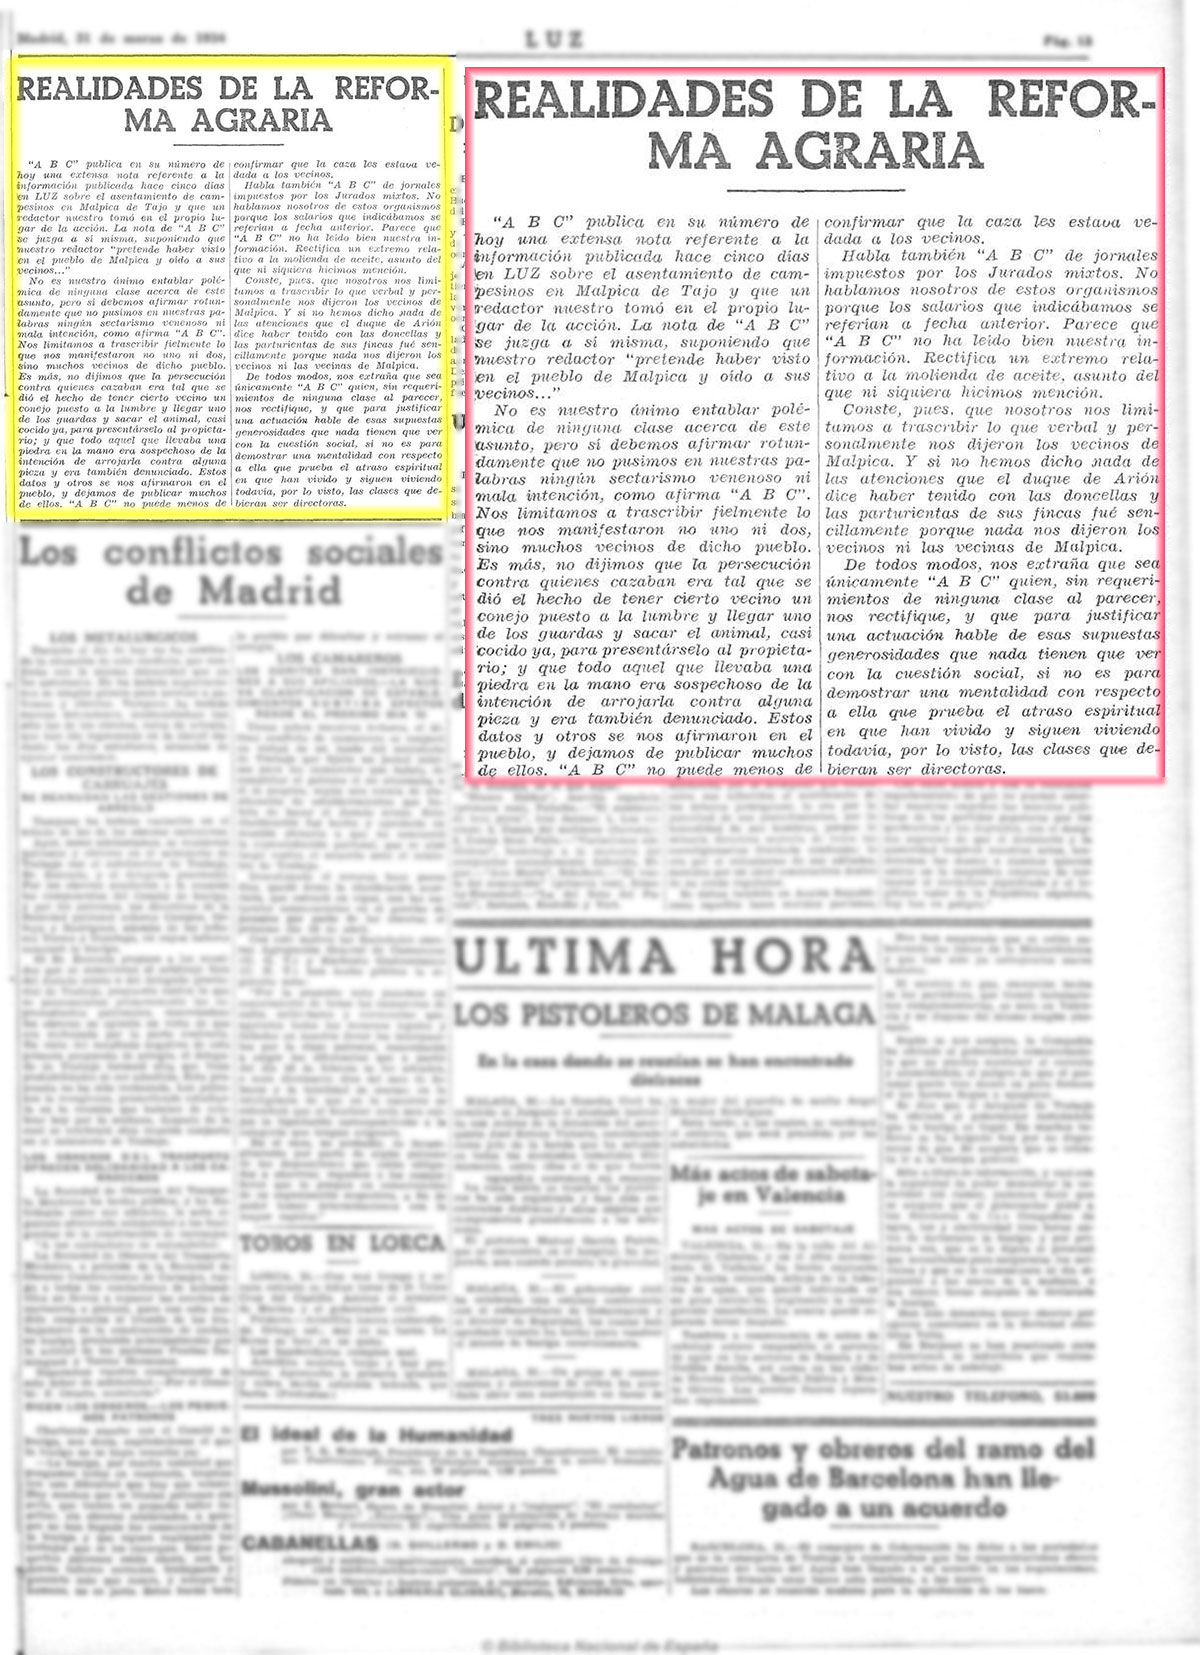 Realidades de la Reforma Agraria. Constectación al ABC. Luz 31-3-1934, pagina 13